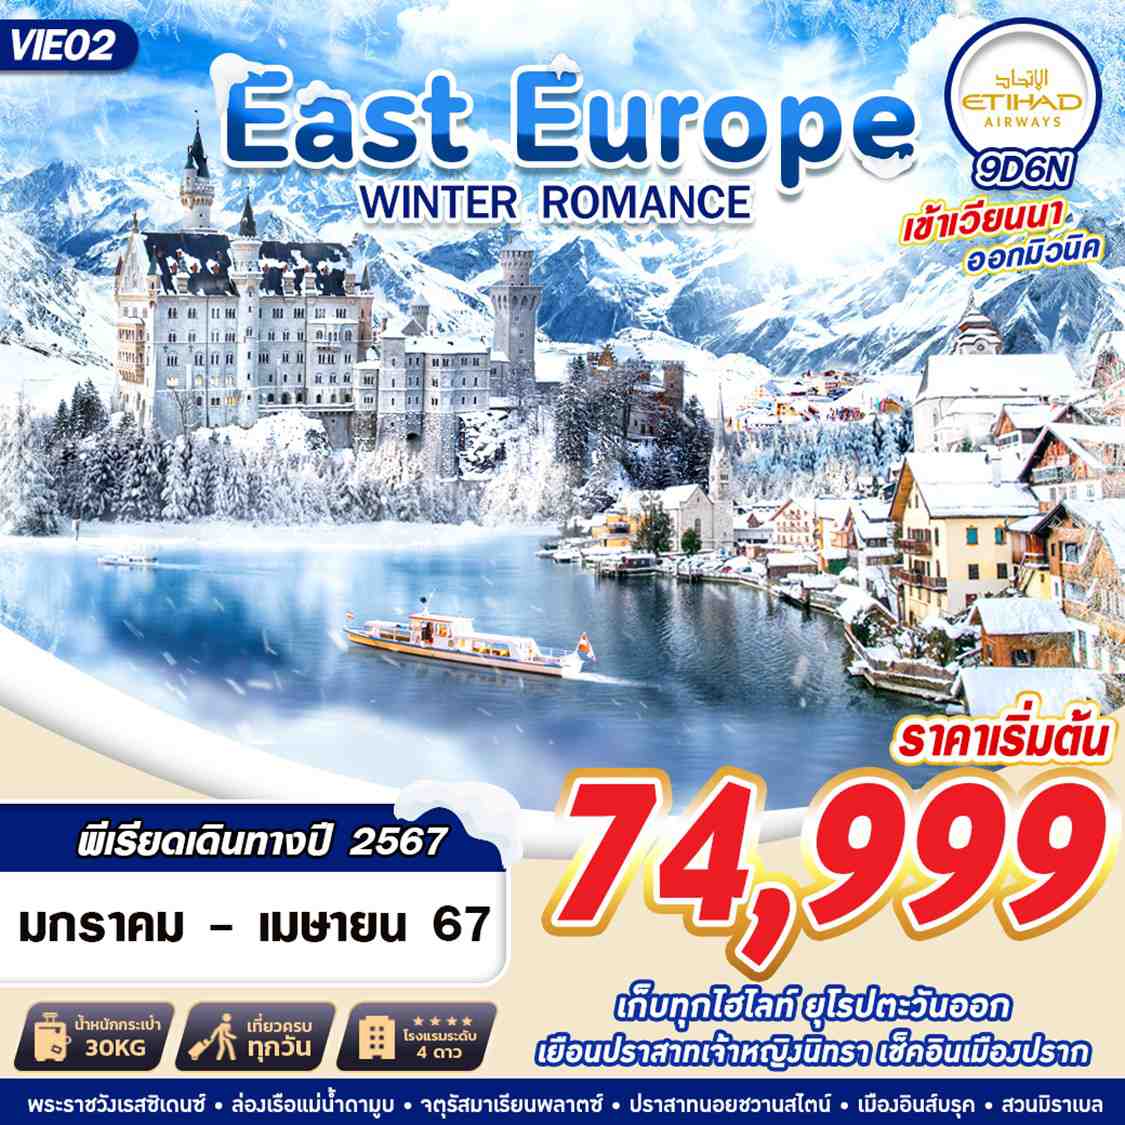 ทัวร์ยุโรปตะวันออก EAST EUROPE WINTER ROMANCE 9วัน 6คืน